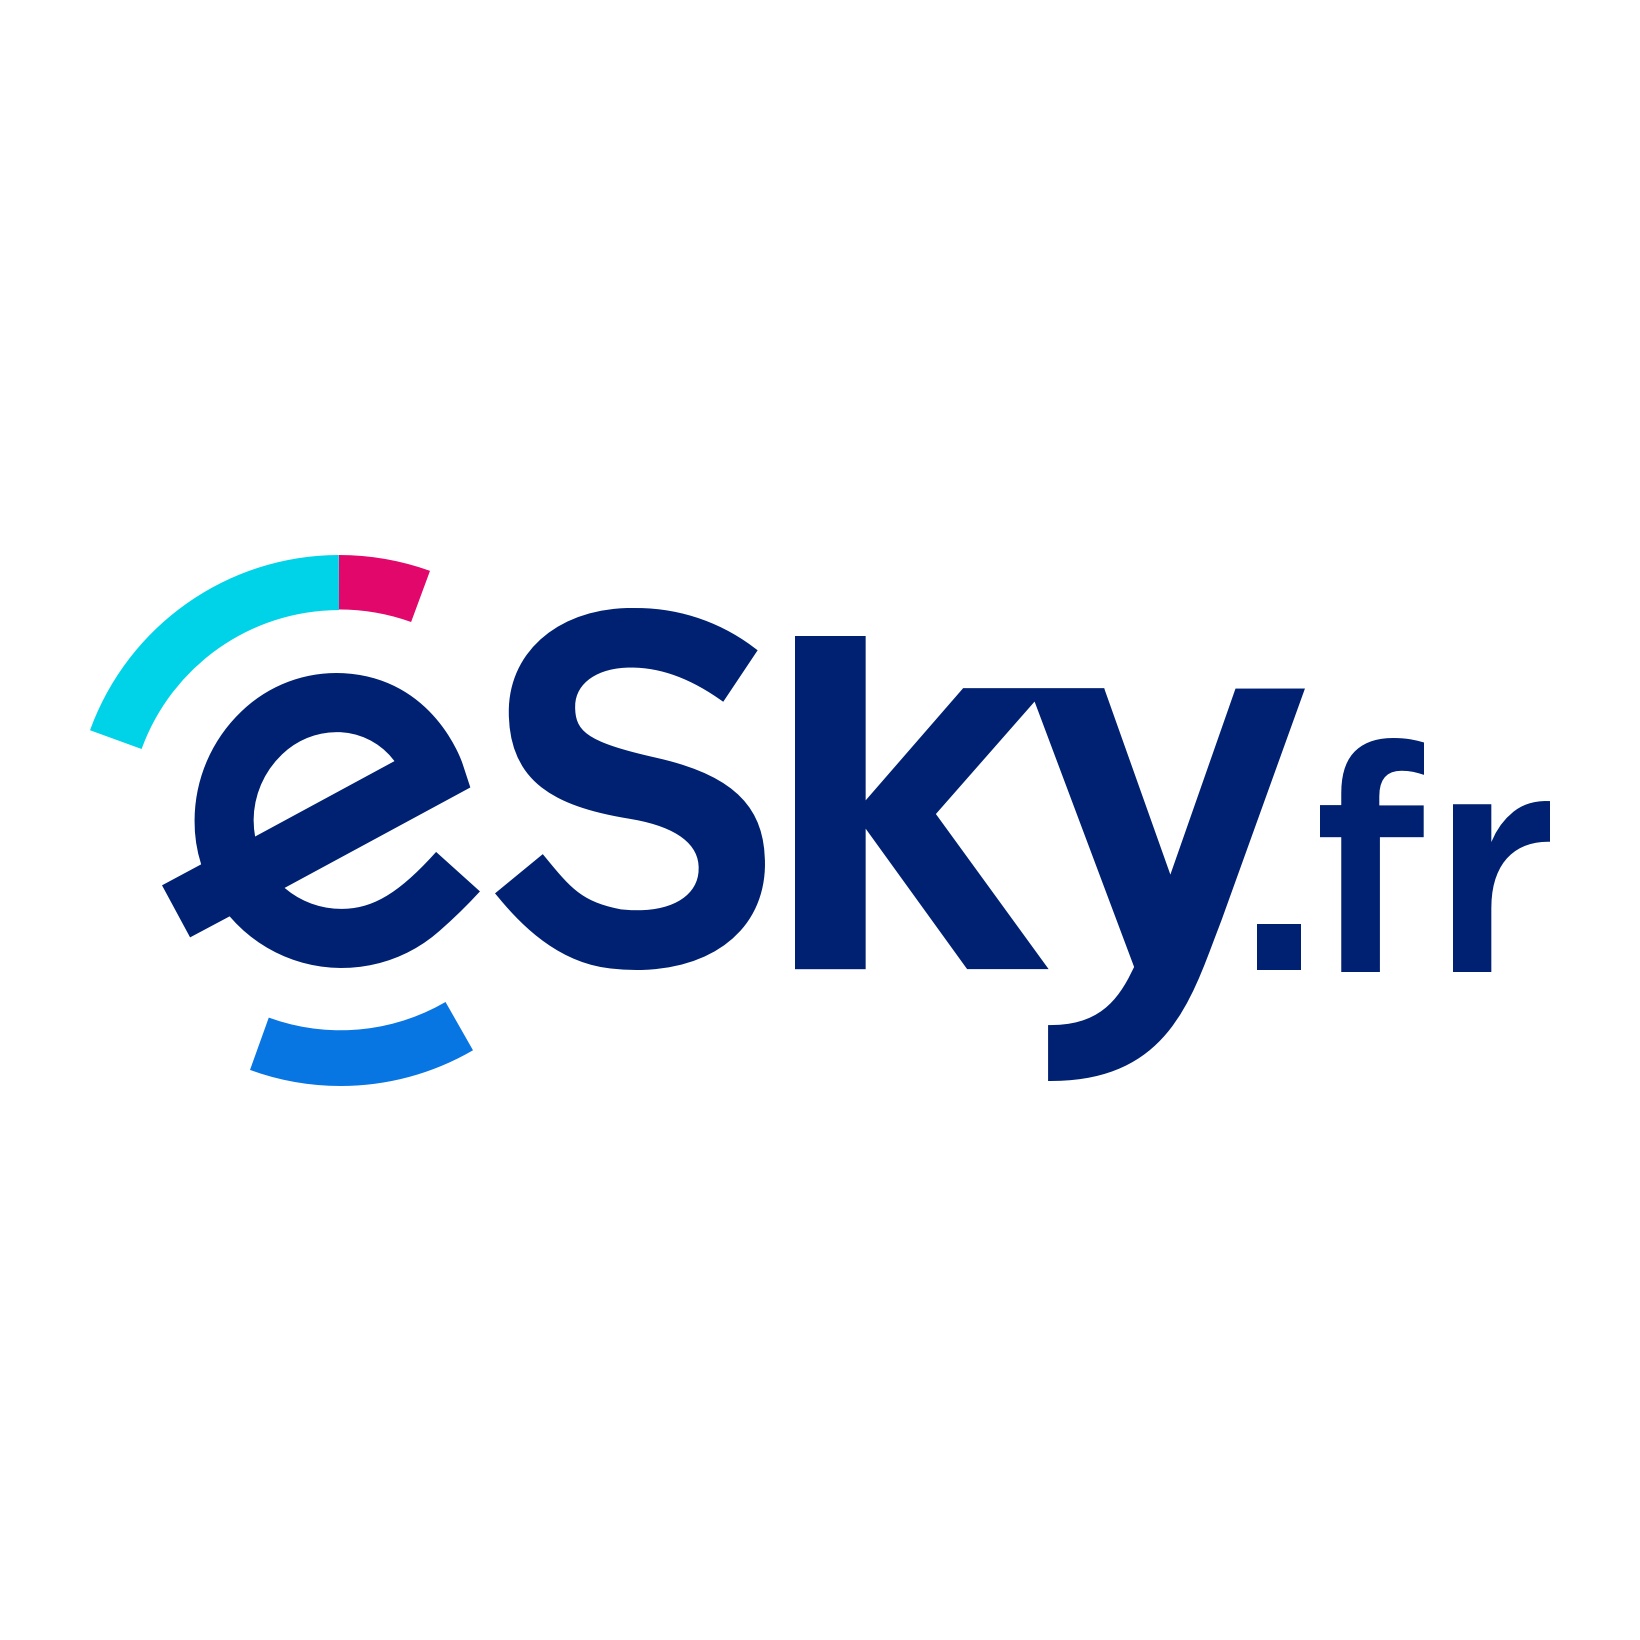 (c) Esky.fr